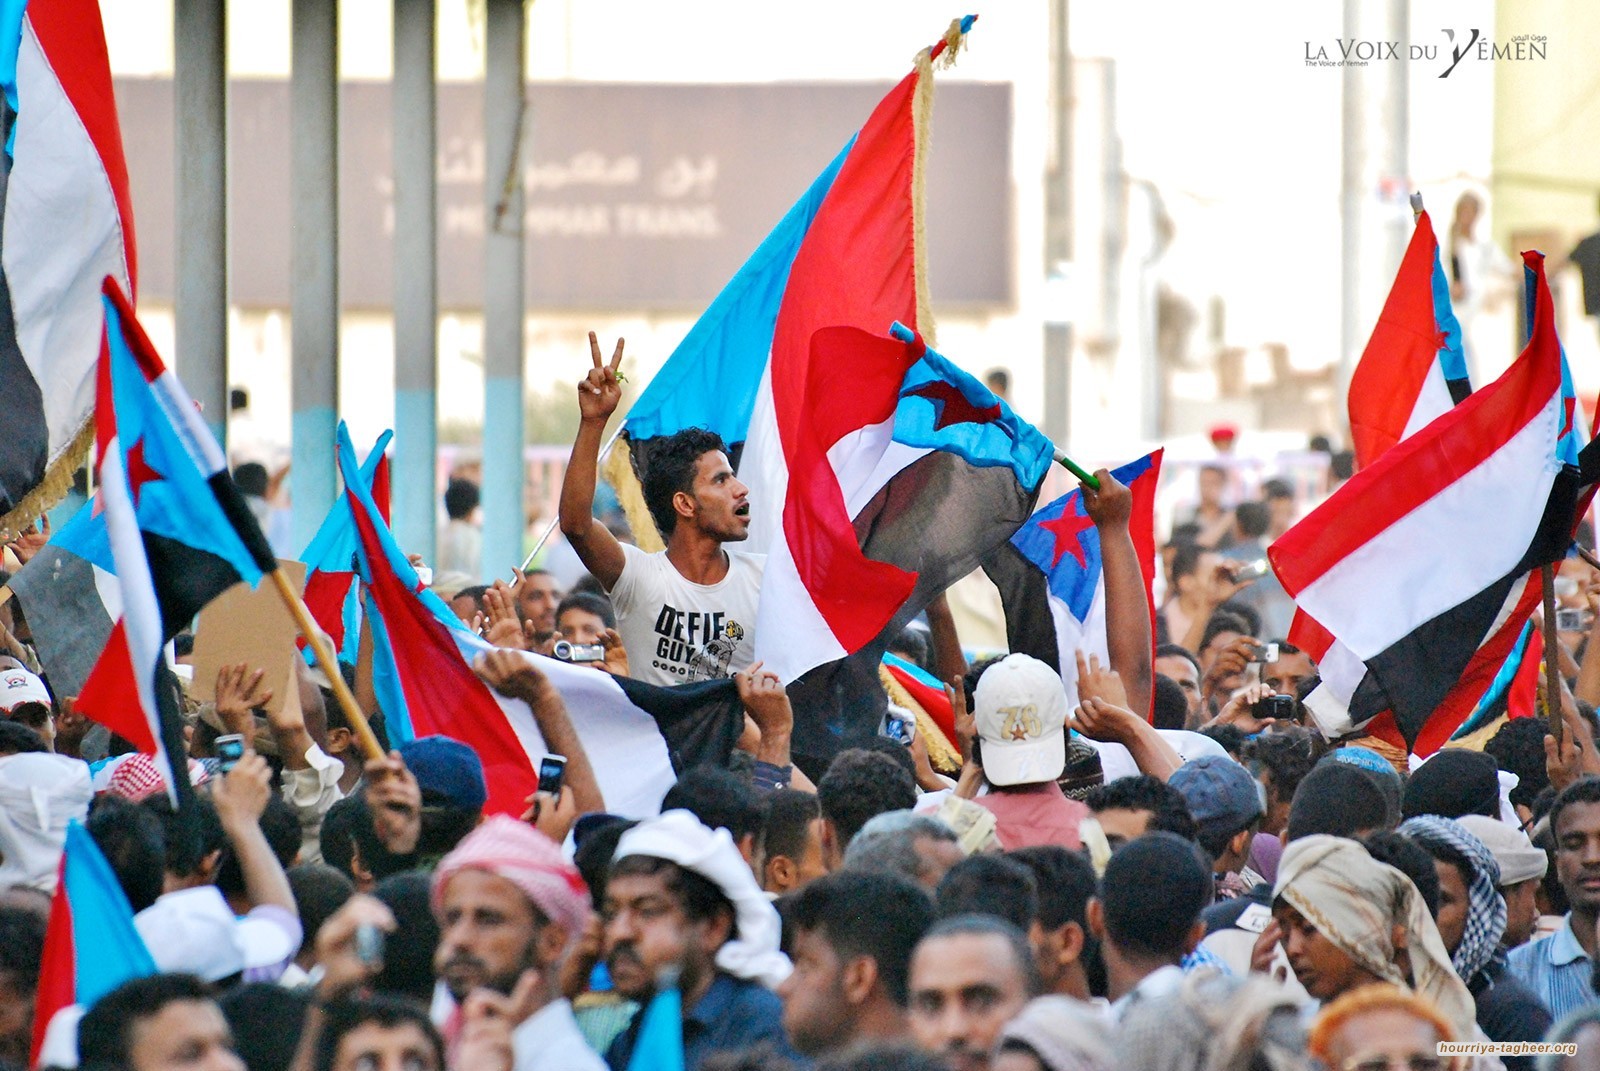 حكومة مرتزقة الرياض في أزمة.. عودة الاحتجاجات إلى عدن ومدن الجنوب